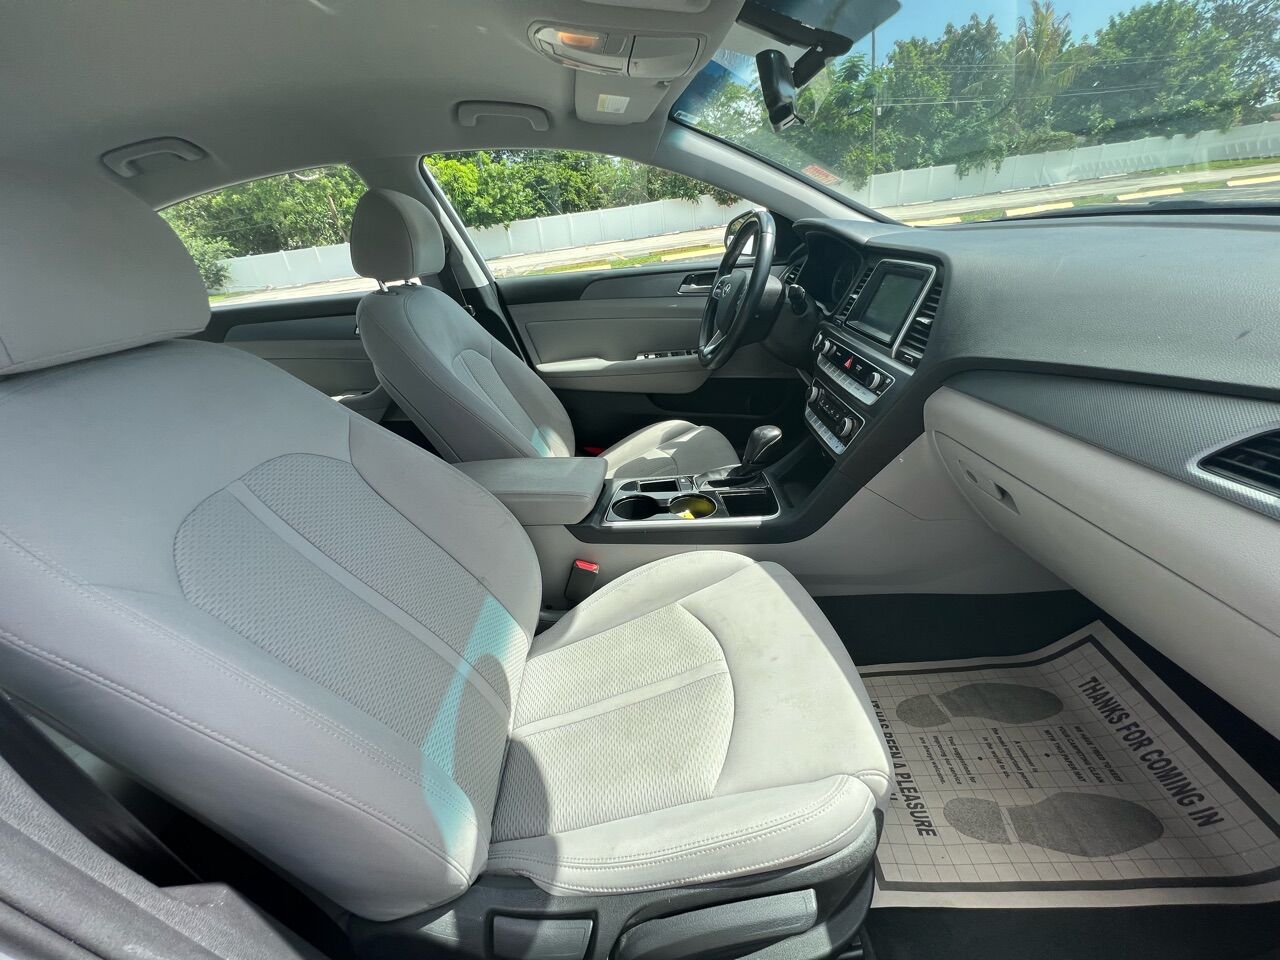 2018 HYUNDAI Sonata Sedan - $16,500